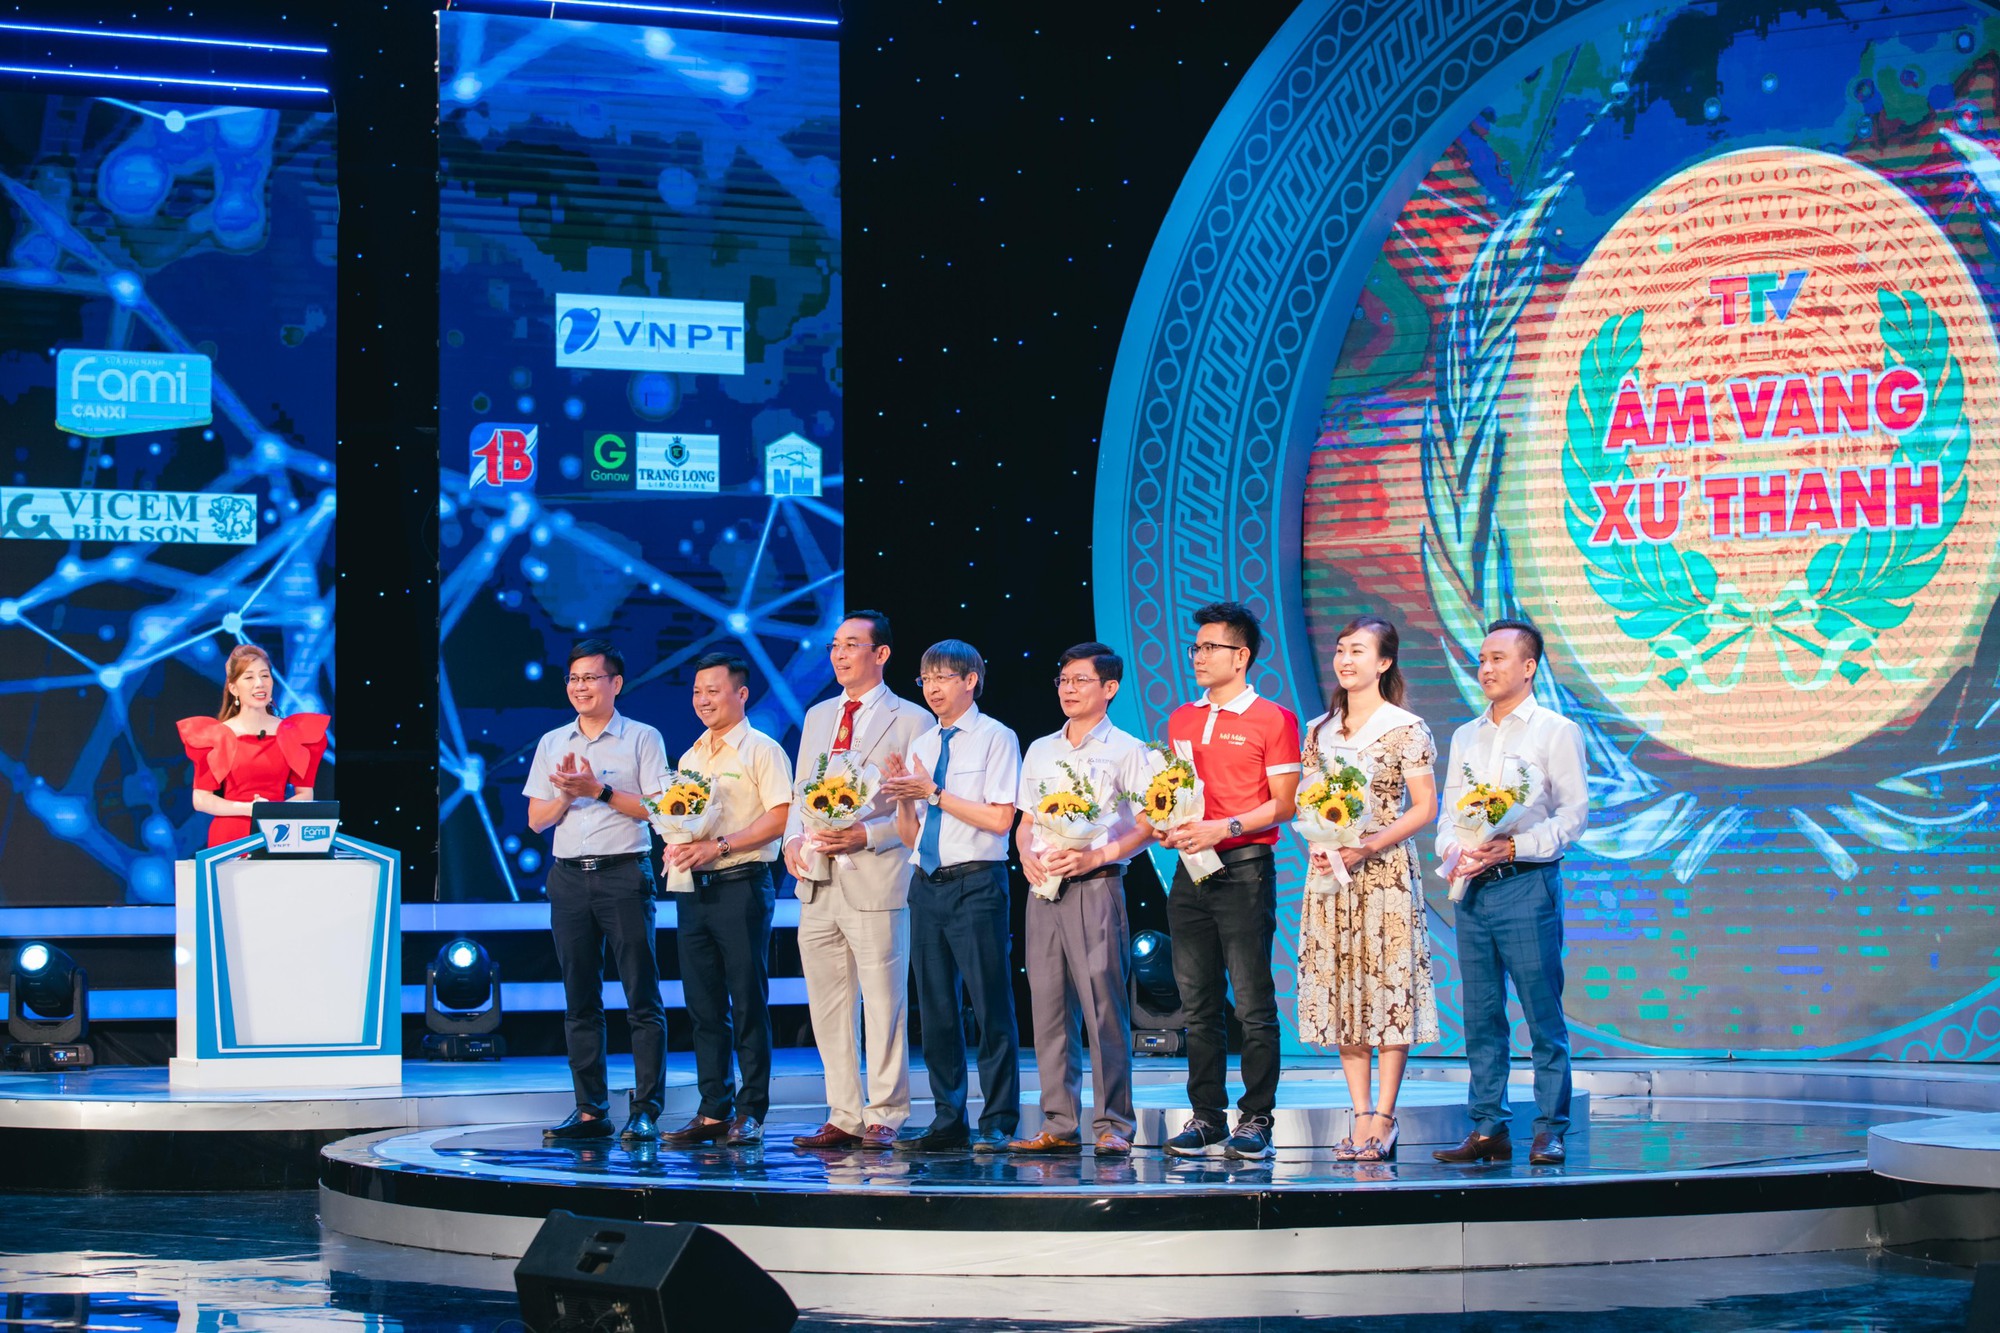 Đài Phát thanh và Truyền hình Thanh Hóa chuẩn bị khởi quay Gameshow Âm vang xứ Thanh lần thứ 17 - Ảnh 2.